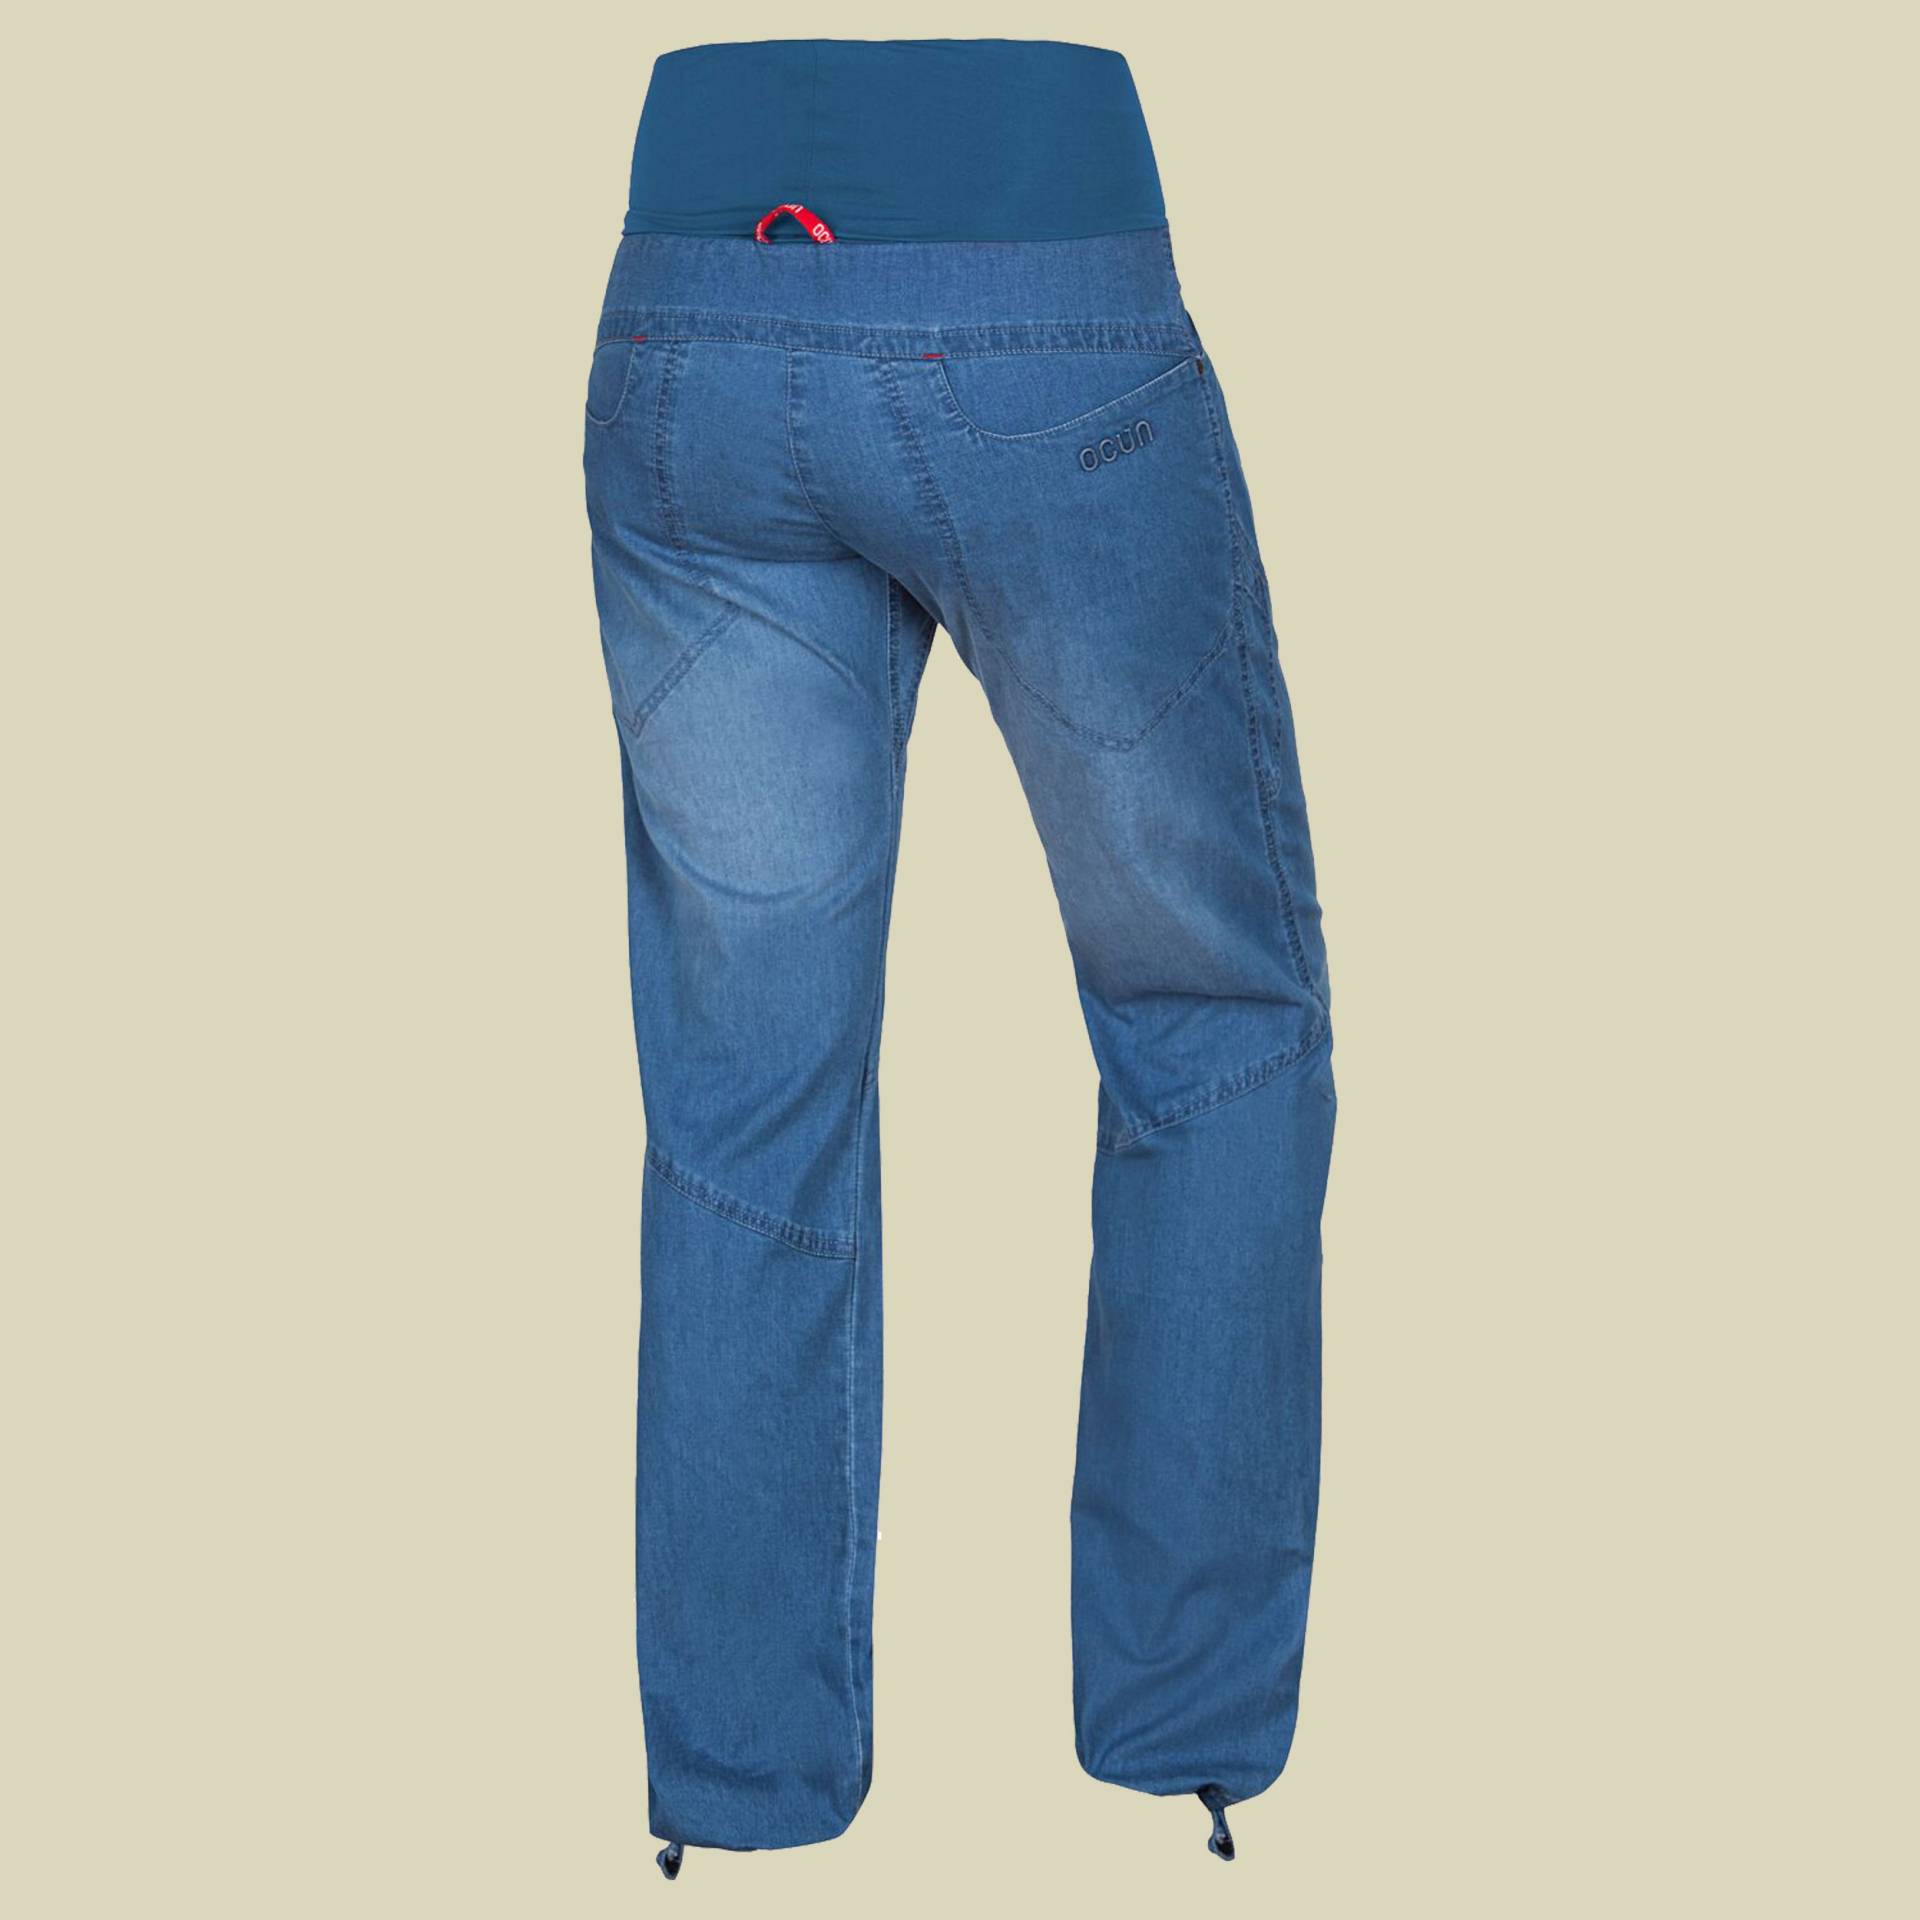 Noya Jeans Women Größe L  Farbe middle blue von Ocun